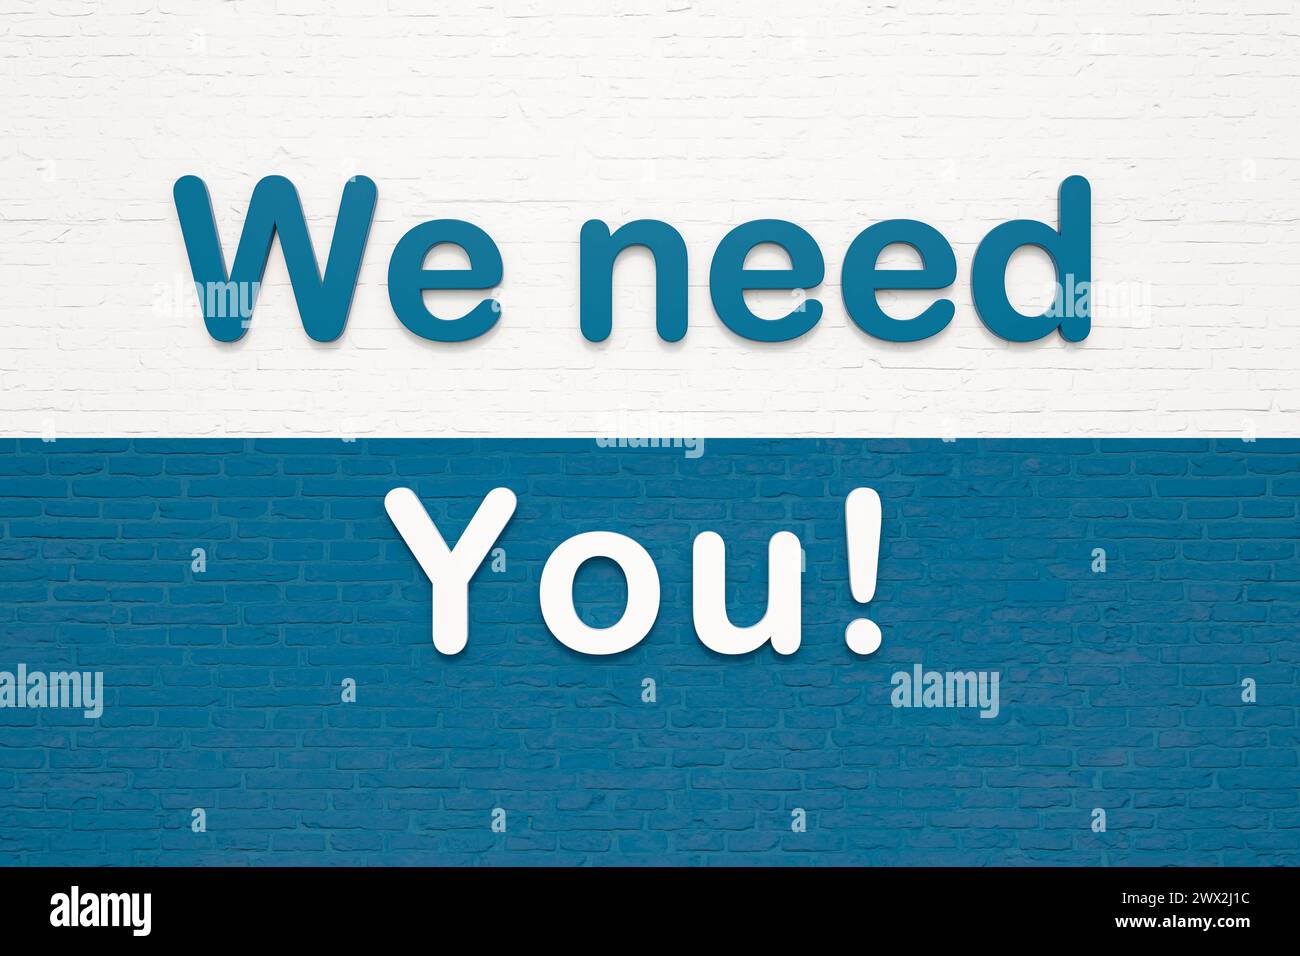 Nous avons besoin de vous. Nous avons besoin de vous. Lettres colorées sur un mur de briques blanches et rouges. Embauche, candidature, emploi, motivation. Illustration 3D TEXT Wall K019 WE nee Banque D'Images